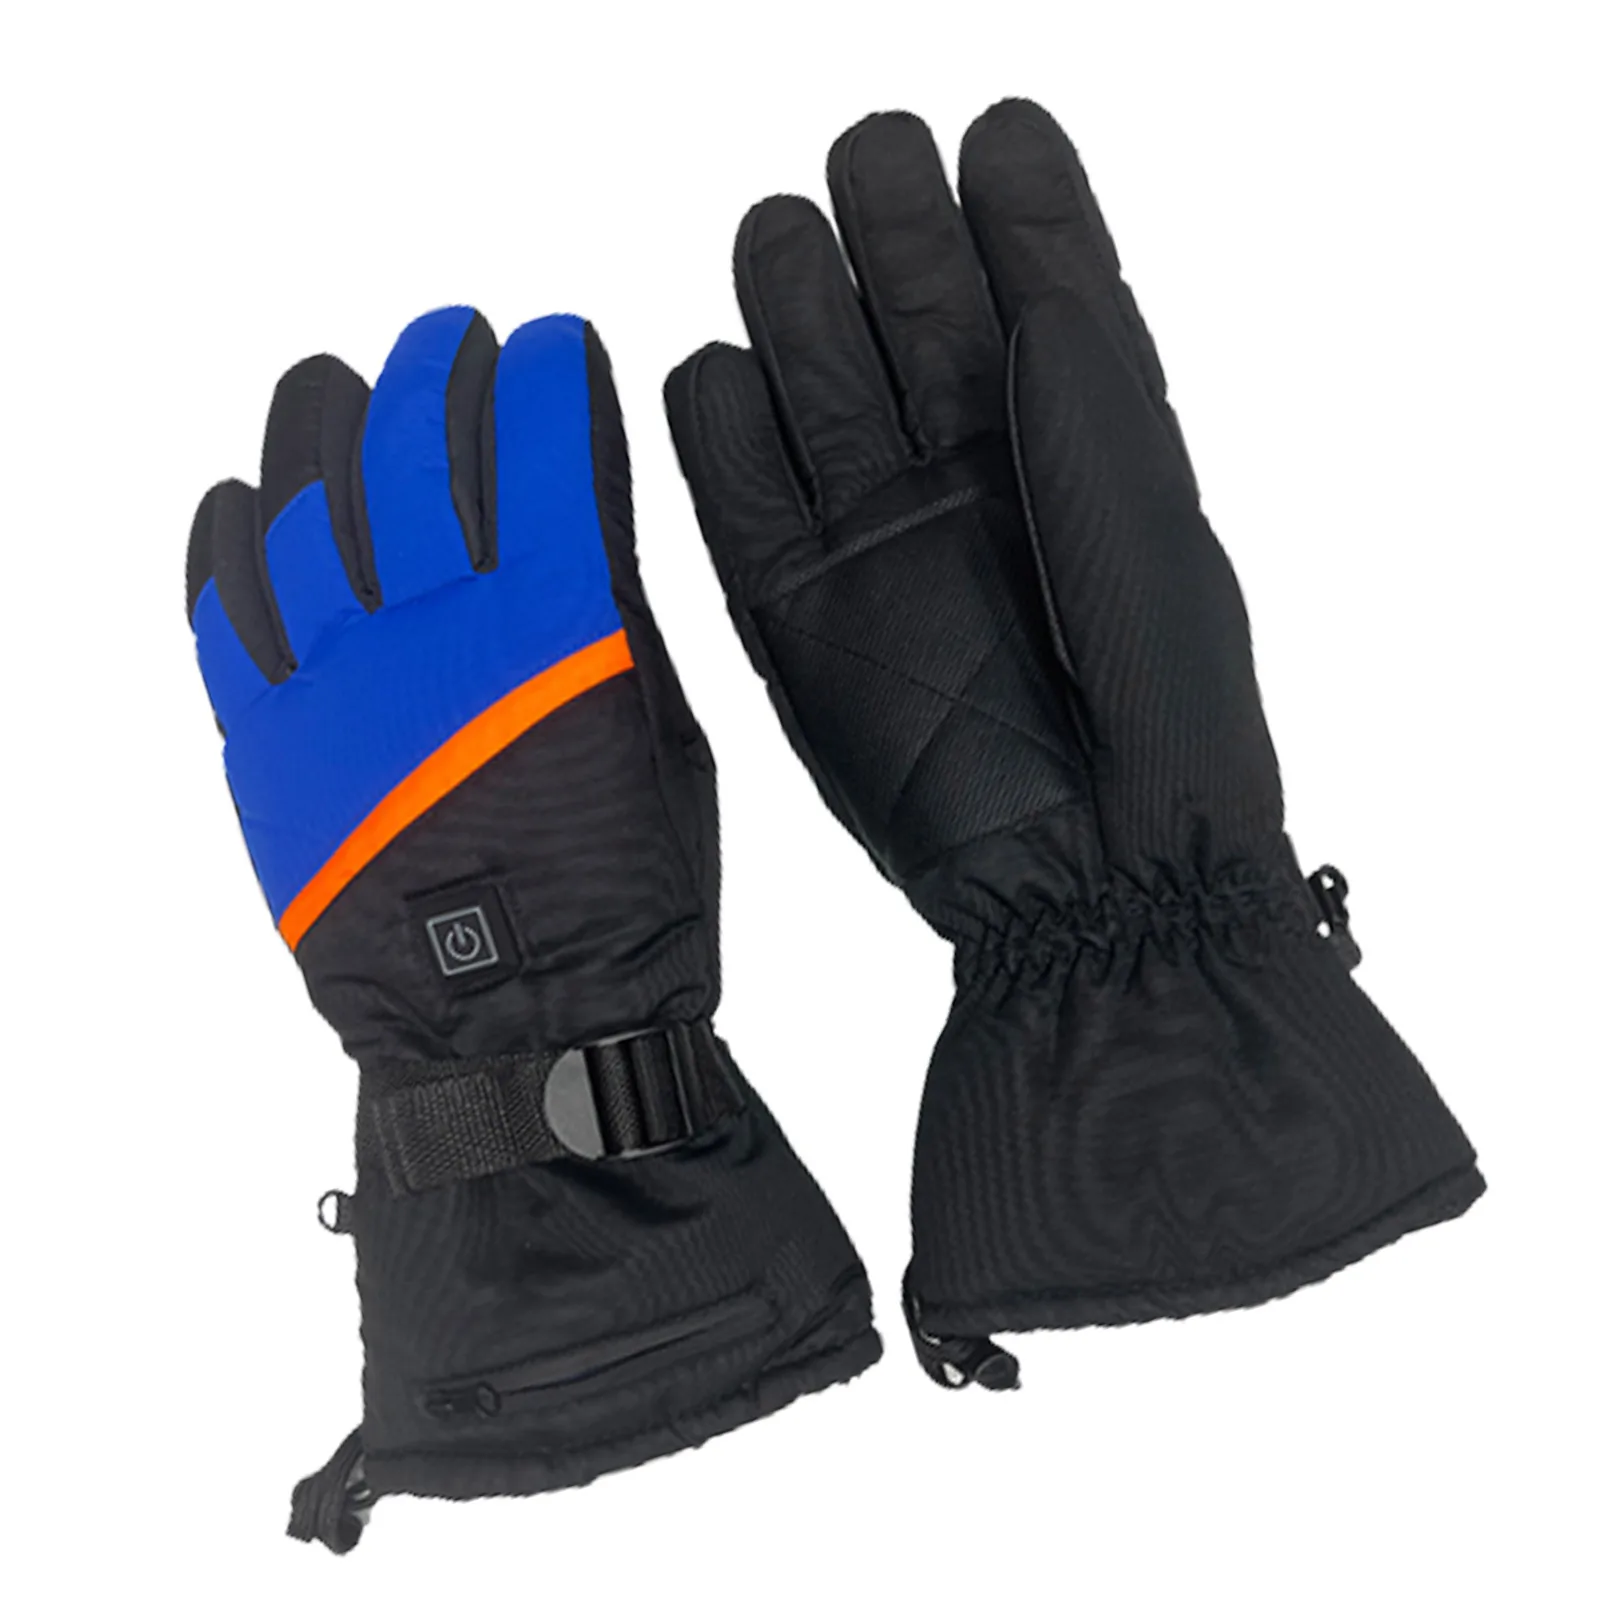 Зимние лыжные перчатки для сноуборда, толстые мягкие перезаряжаемые, с подогревом, противоскользящий дизайн для езды на велосипеде, мотоцикле, пешего туризма